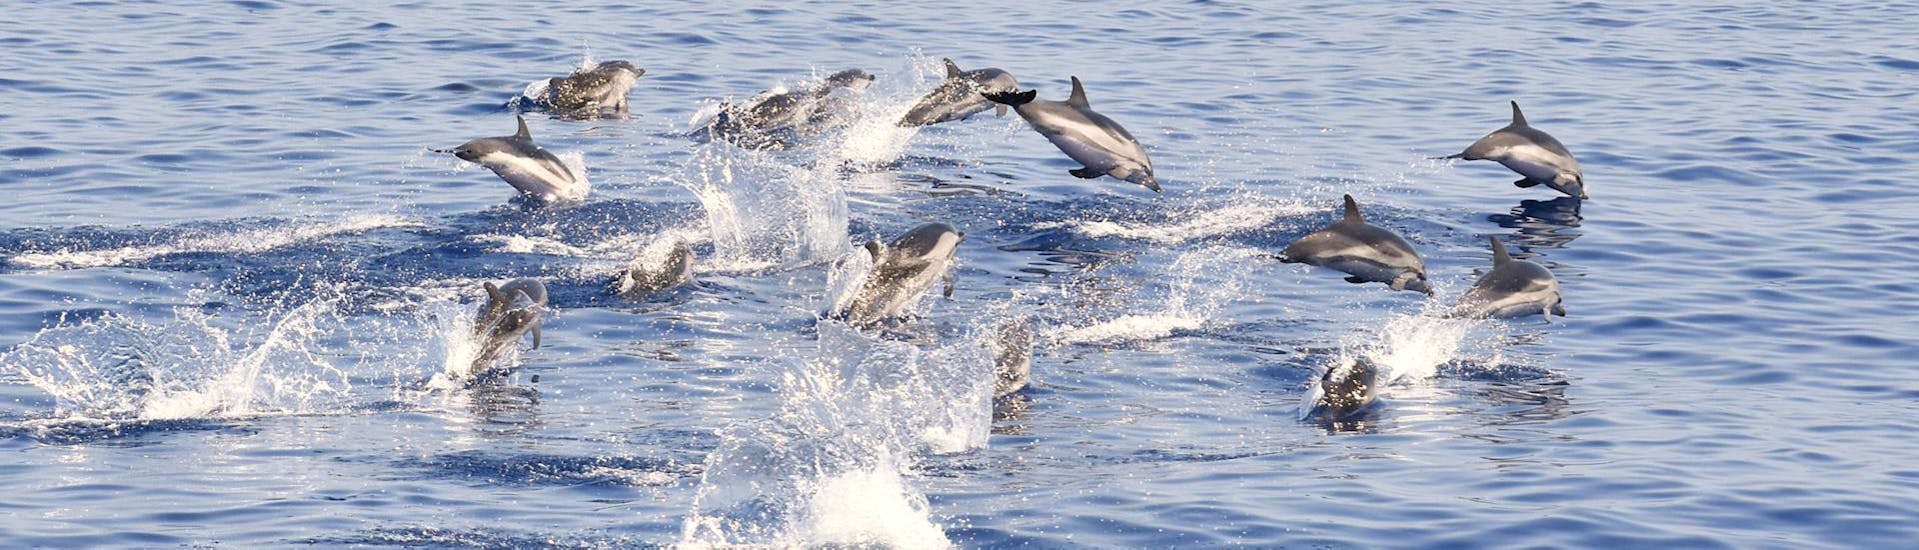 Quelques dauphins repérés lors de l'excursion en bateau de Savona au Sanctuaire Pelagos avec observation des cétacés avec BMC Yacht.